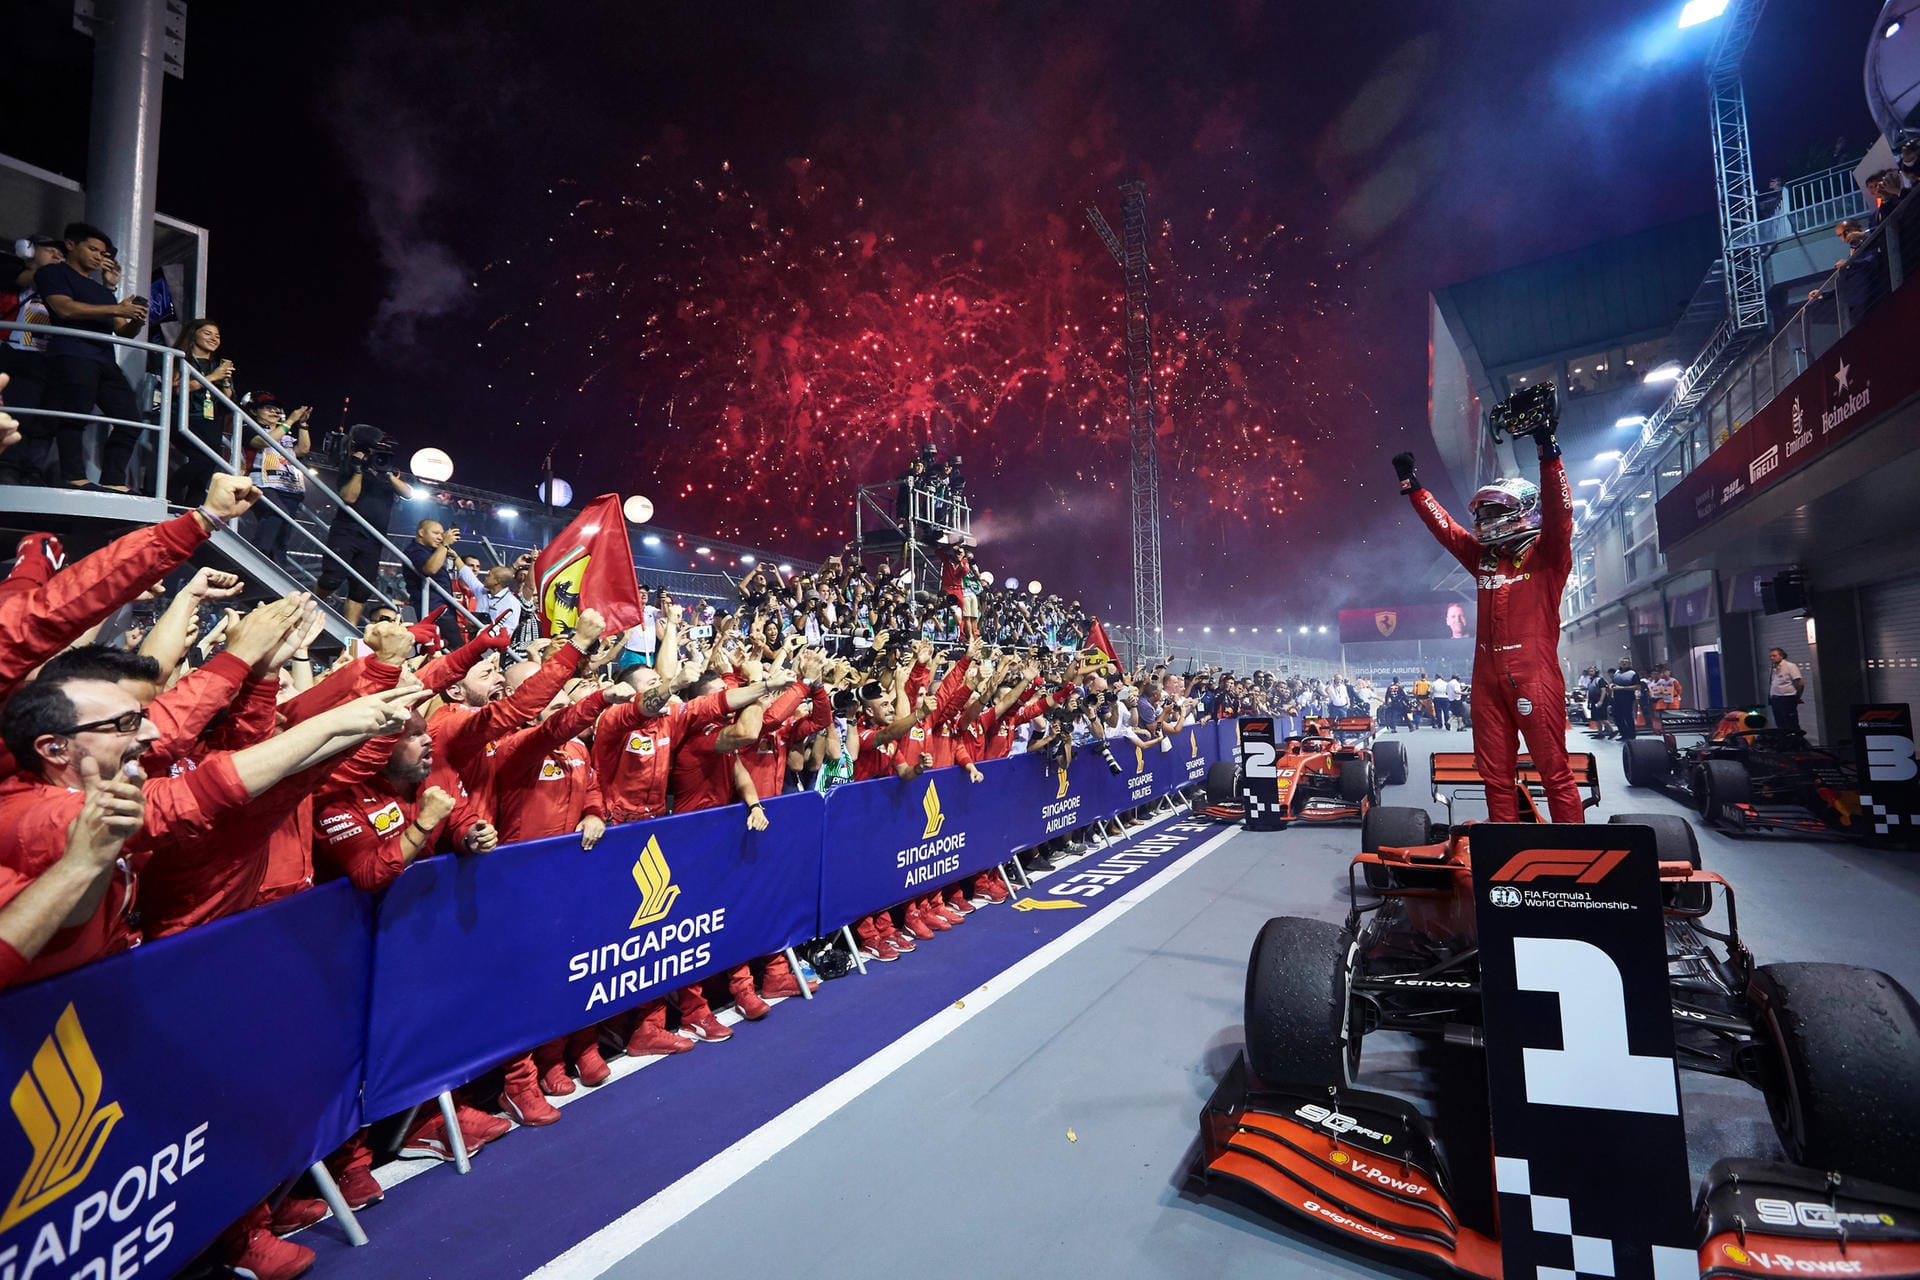 "As": "Vielleicht hat Vettel sieben Leben. Wahrscheinlich war er nie tot, oder, wie (Daniel) Ricciardo sagte, als er nach Singapur kam, vielleicht brauchte er nur ein Rennen, um sein Schicksal zu wenden. Auf seiner fetischisierten Rennstrecke wurde dem großen Vierfachweltmeister von Ferrari das Lächeln zurückgegeben. Es war ein unerbittlicher Triumph, der auf Strategie beruhte, aber auch auf soliden Überholmanövern."